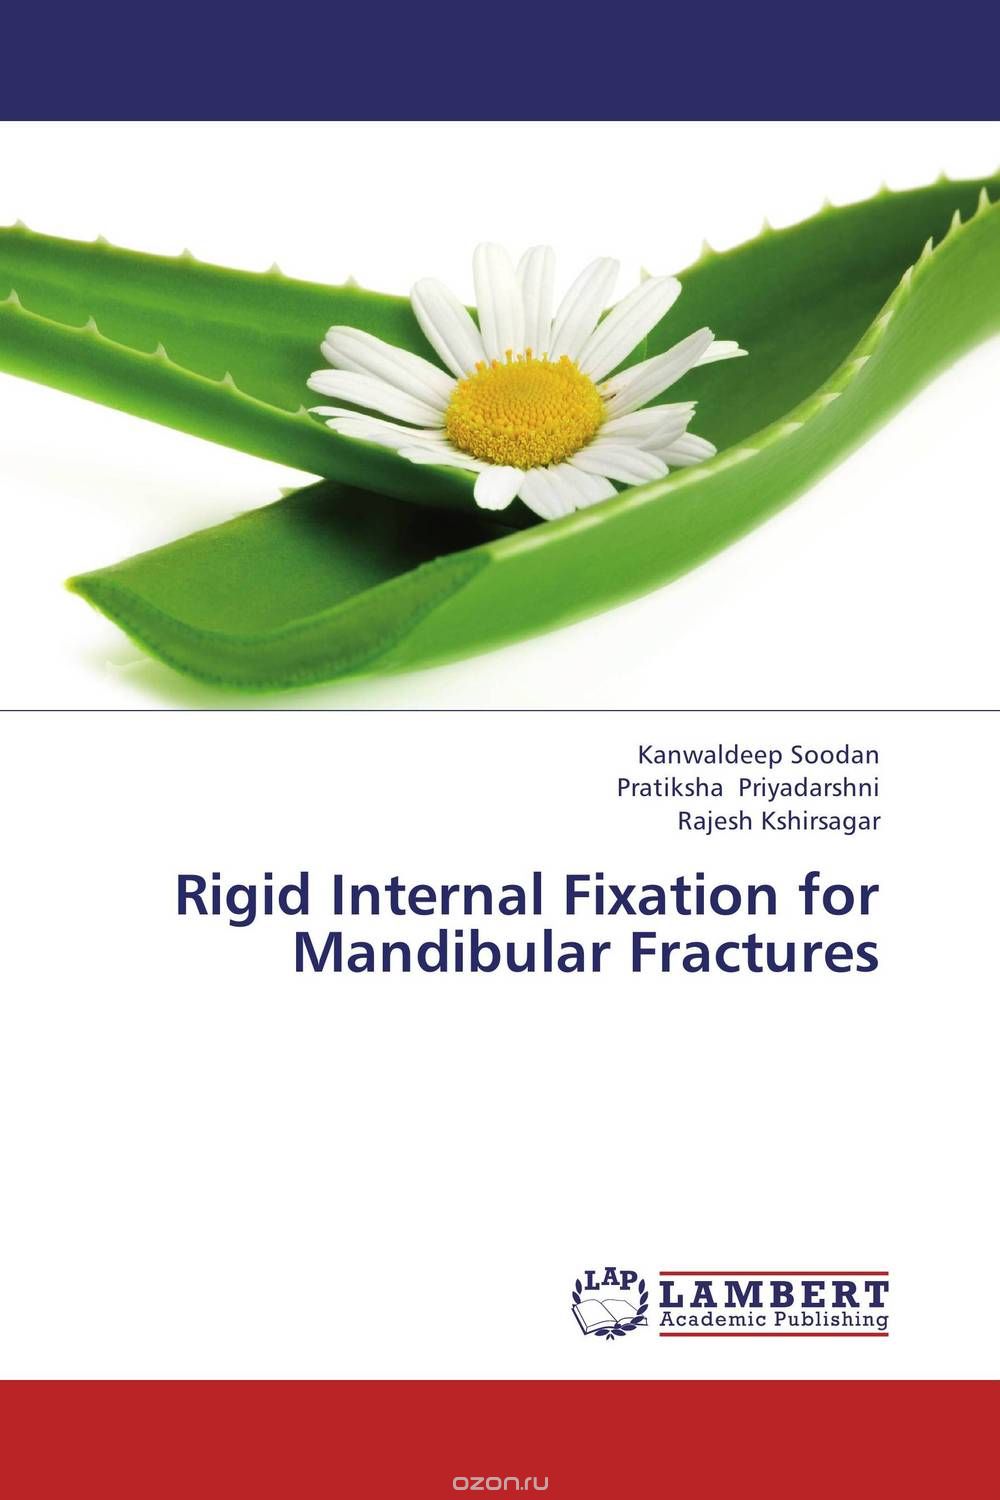 Скачать книгу "Rigid Internal Fixation for Mandibular Fractures"